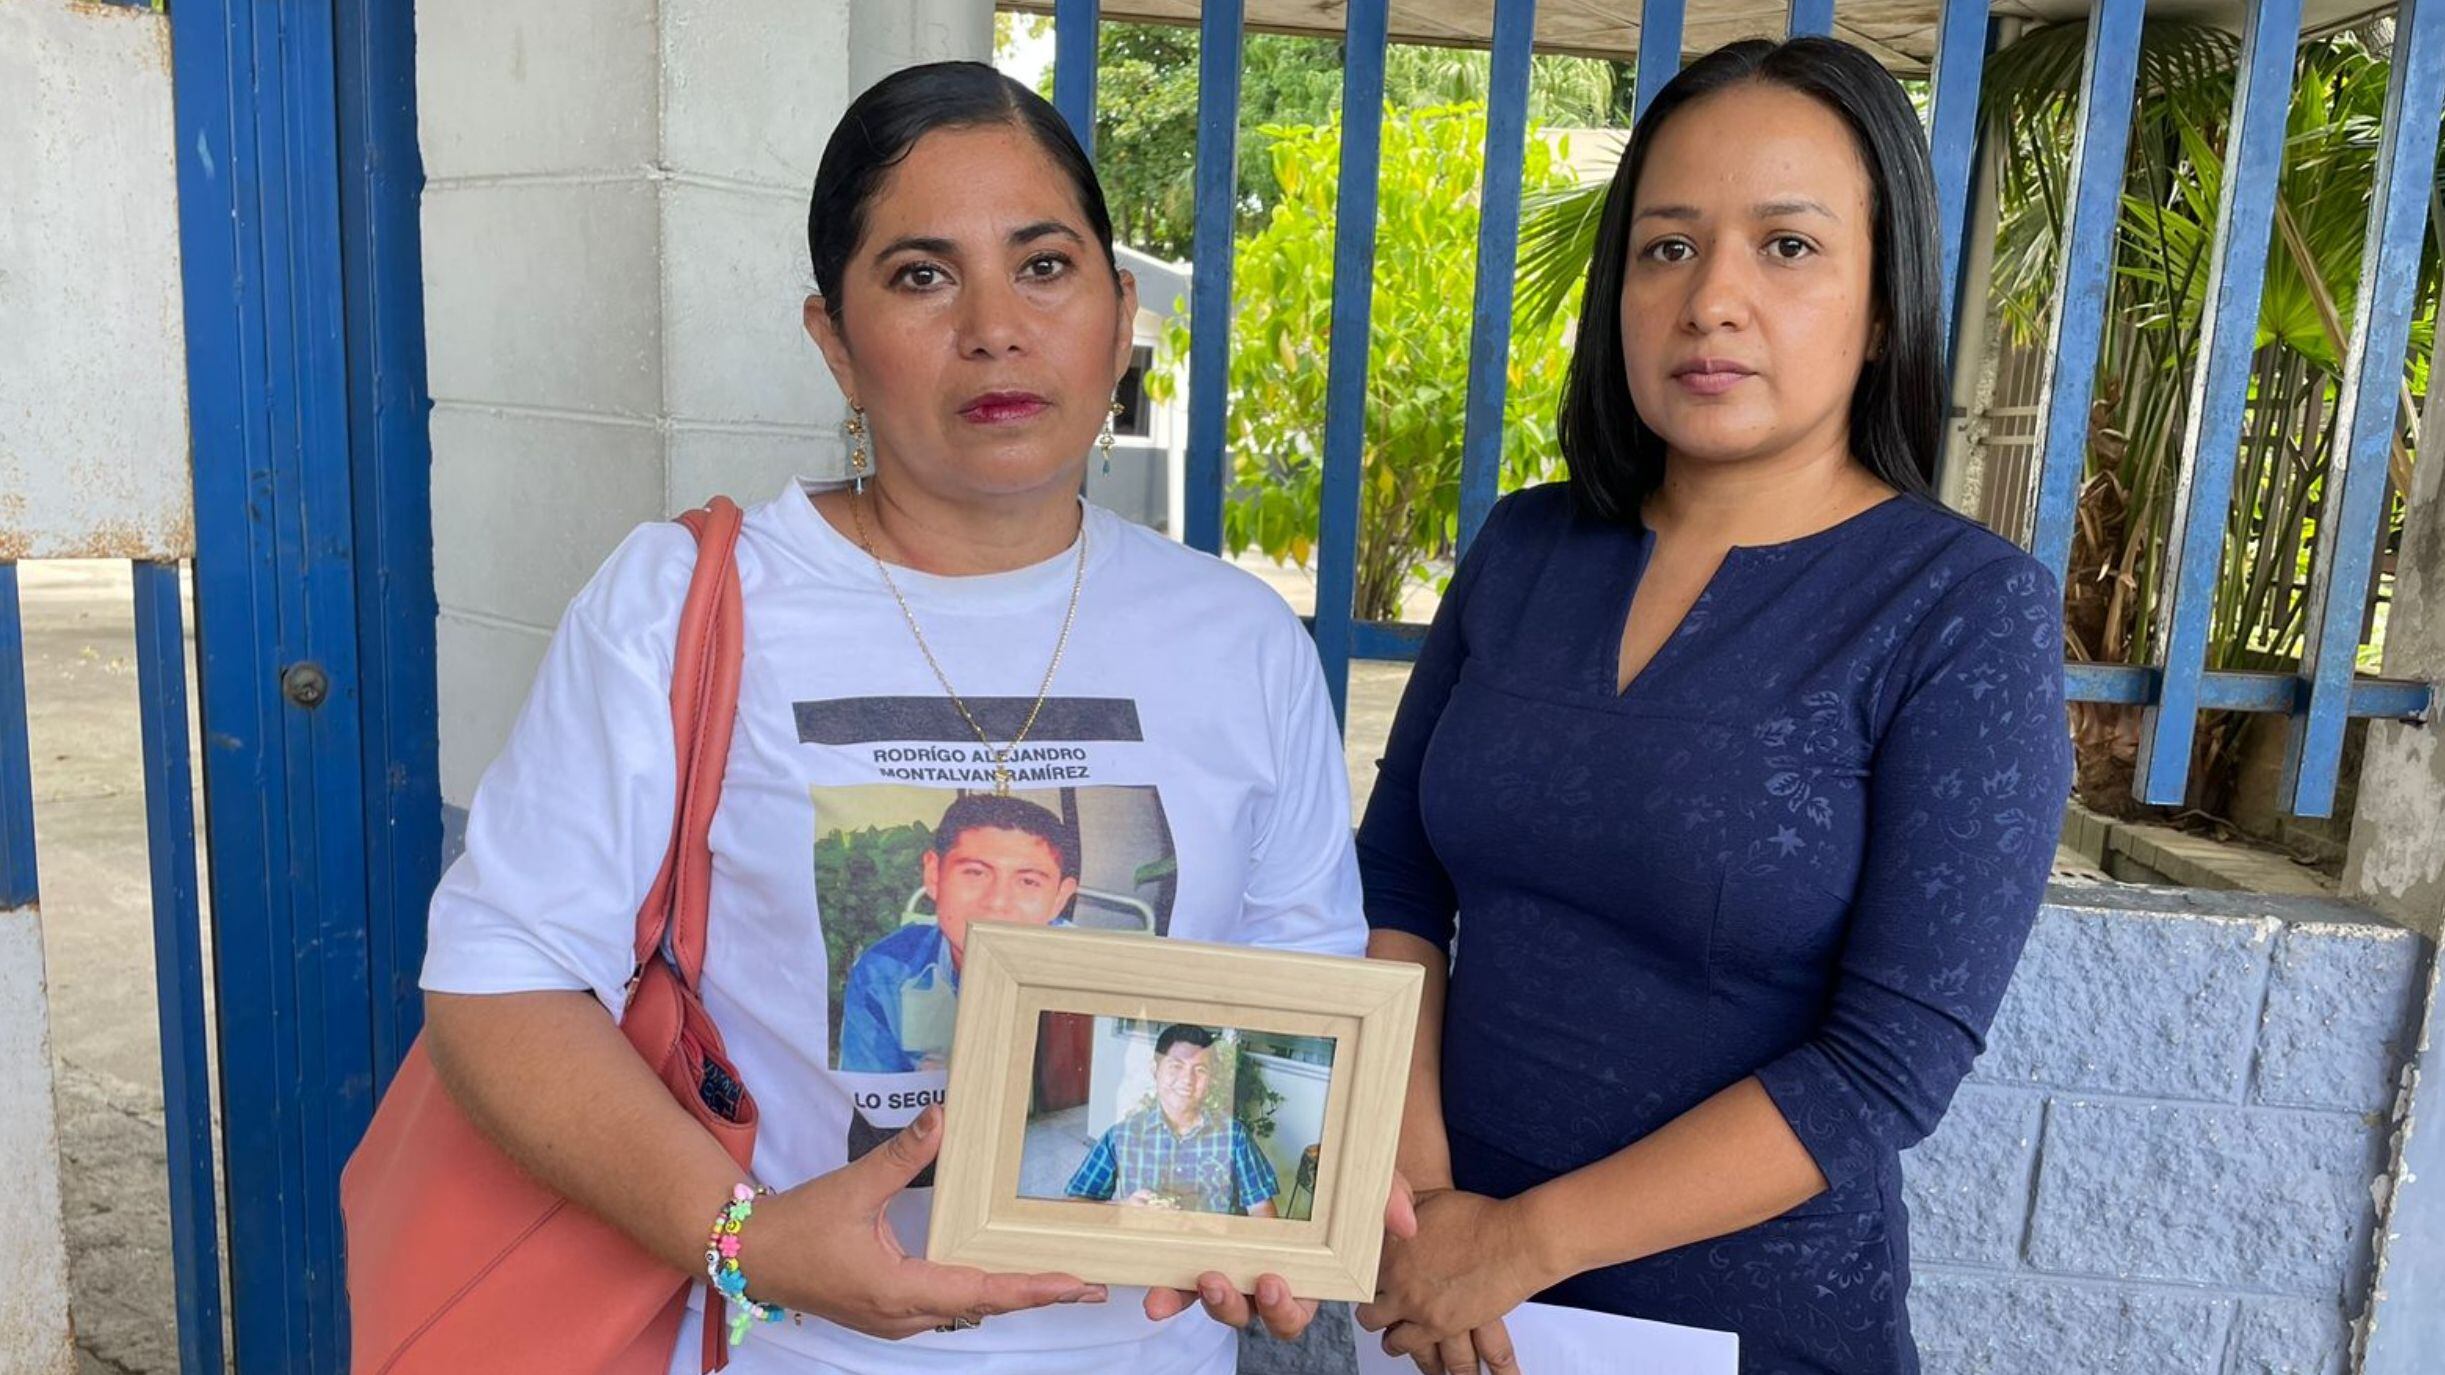 Una madre exige justicia en El Salvador por su hijo desaparecido desde 2015: “Quiero hallar sus restos para sepultarlos”